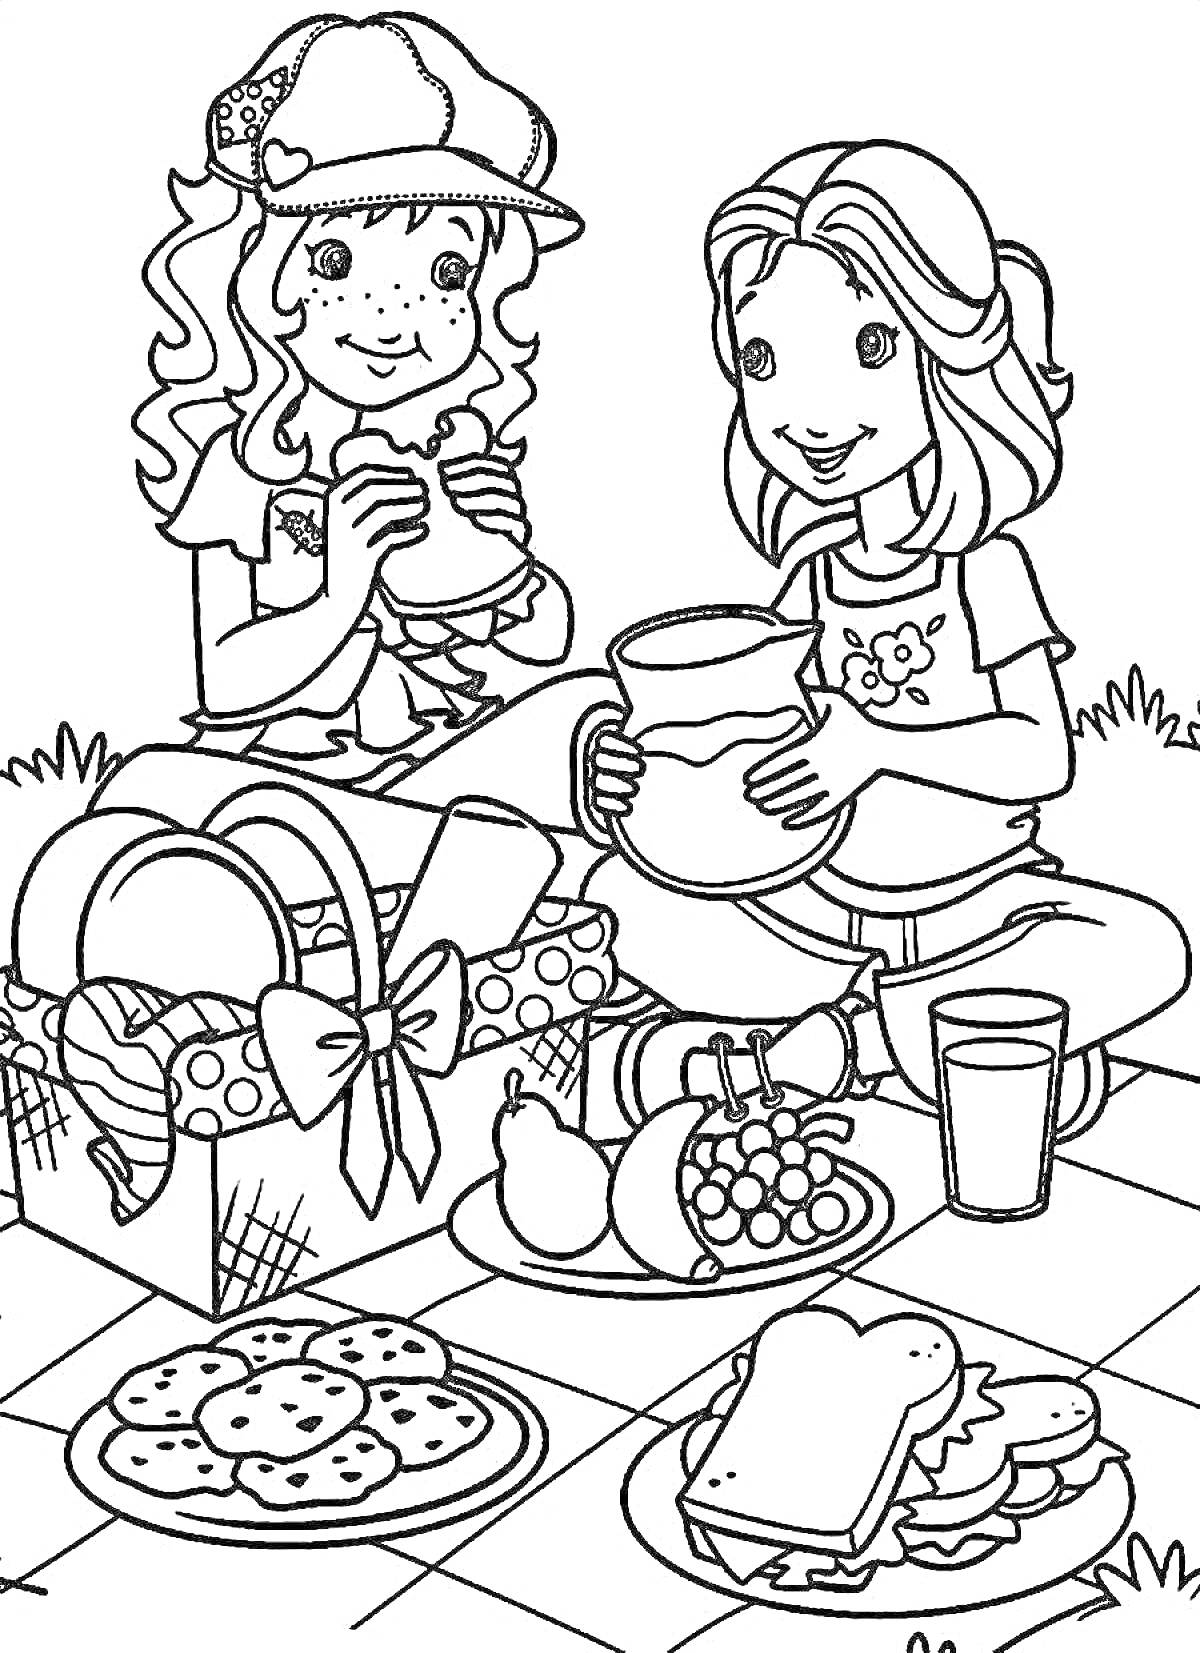 Раскраска Девочки на пикнике с бутербродами, фруктами и печеньем